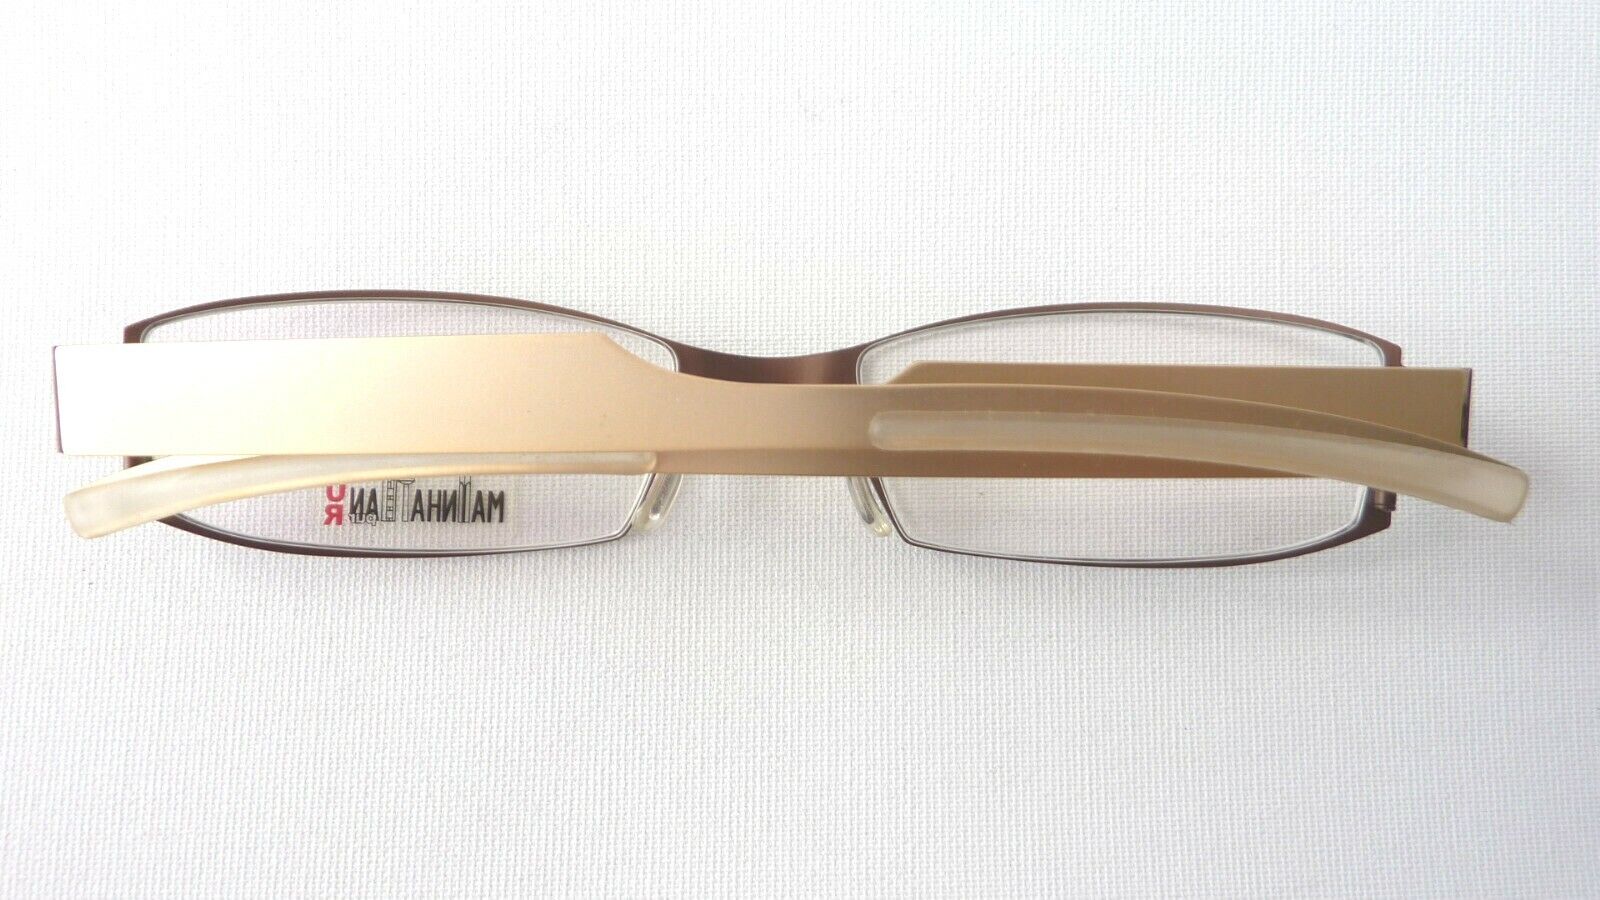 Brille braun schmal Brillenfassung Metallgestell mit Steckbügel für Helmträger